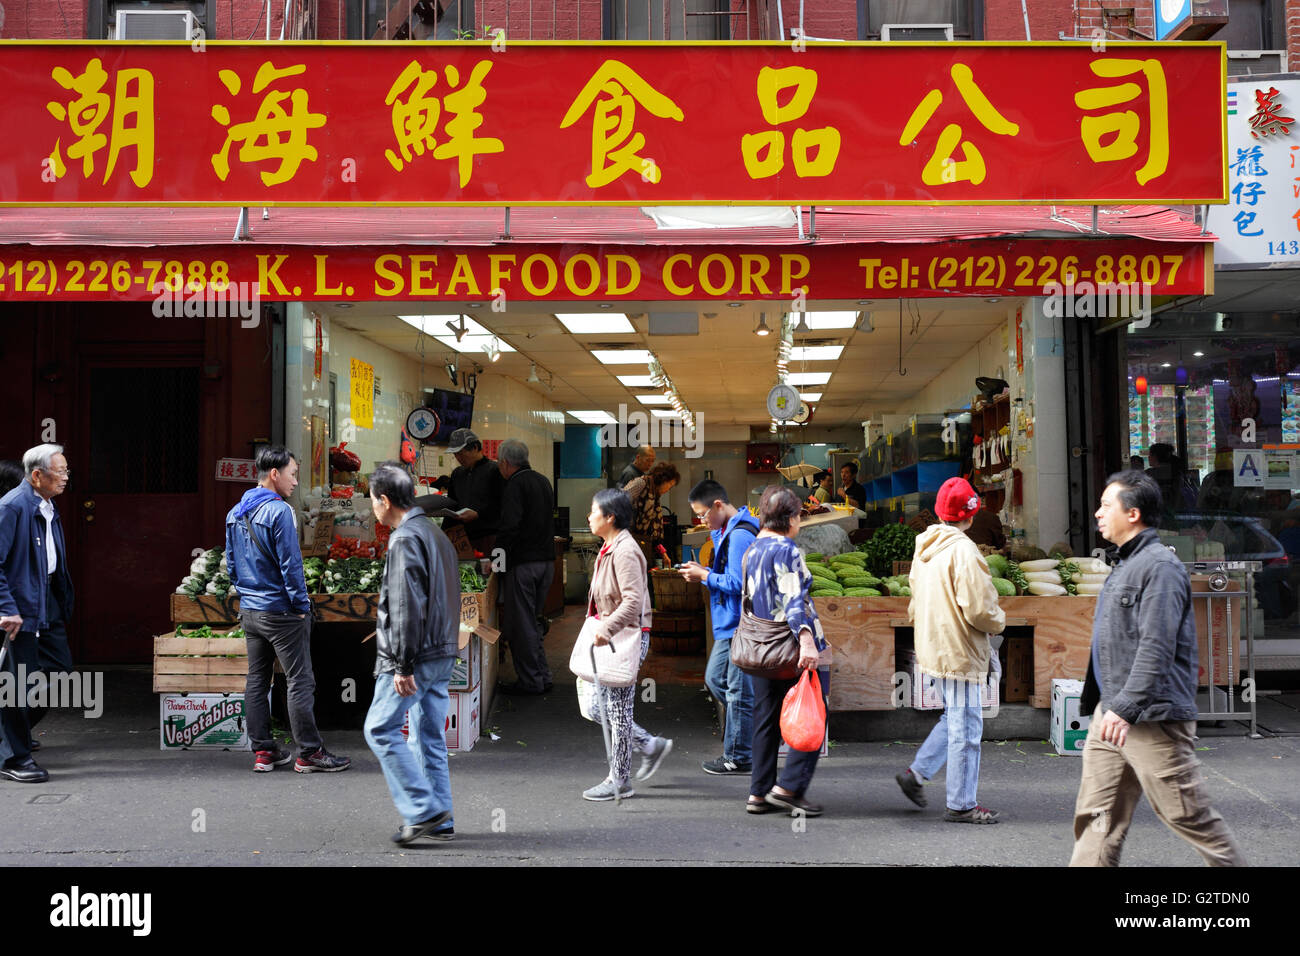 22.10.2015, New York New York, Stati Uniti d'America - negozio di generi alimentari a base di pesce nella Chinatown di Manhattan. 00P151022D145CAROEX.JPG - non per la vendita in G E R M A N Y, A U S T R I A, S W I T Z e R L A N D [modello di rilascio: NO, la proprietà di rilascio: NO, (c) caro agenzia fotografica / Muhs, http://www.caro-images.com, info@carofoto.pl - Qualsiasi uso di questa immagine è soggetto a royalty!] Foto Stock